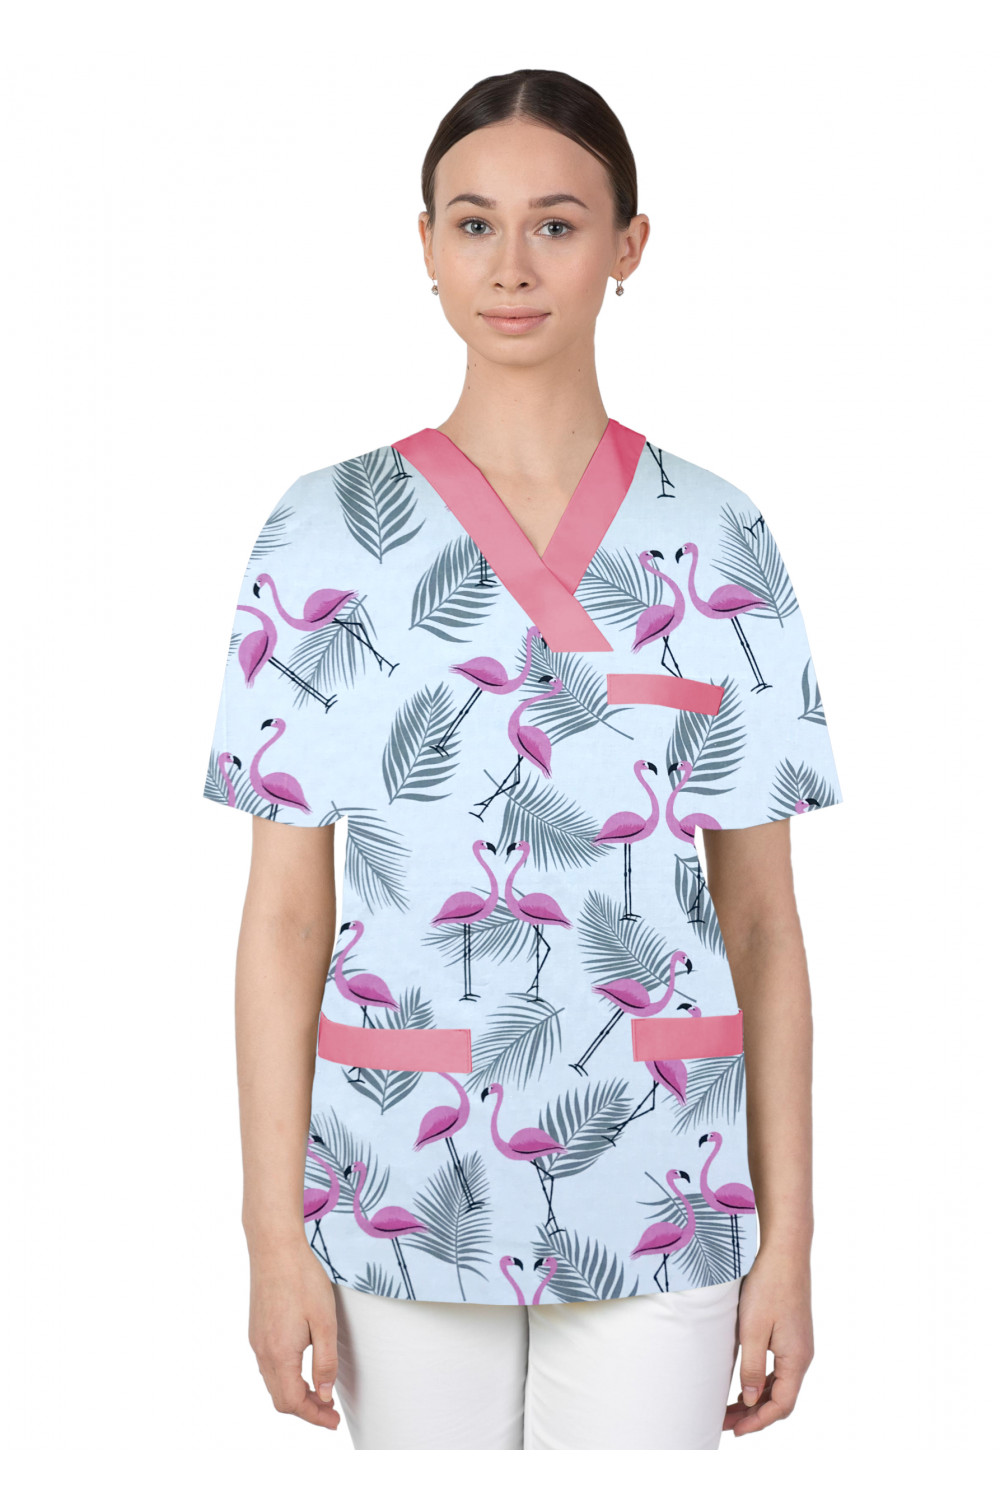 Bluza medyczna we wzorki kolorowa damska M-074G różowe flamingi